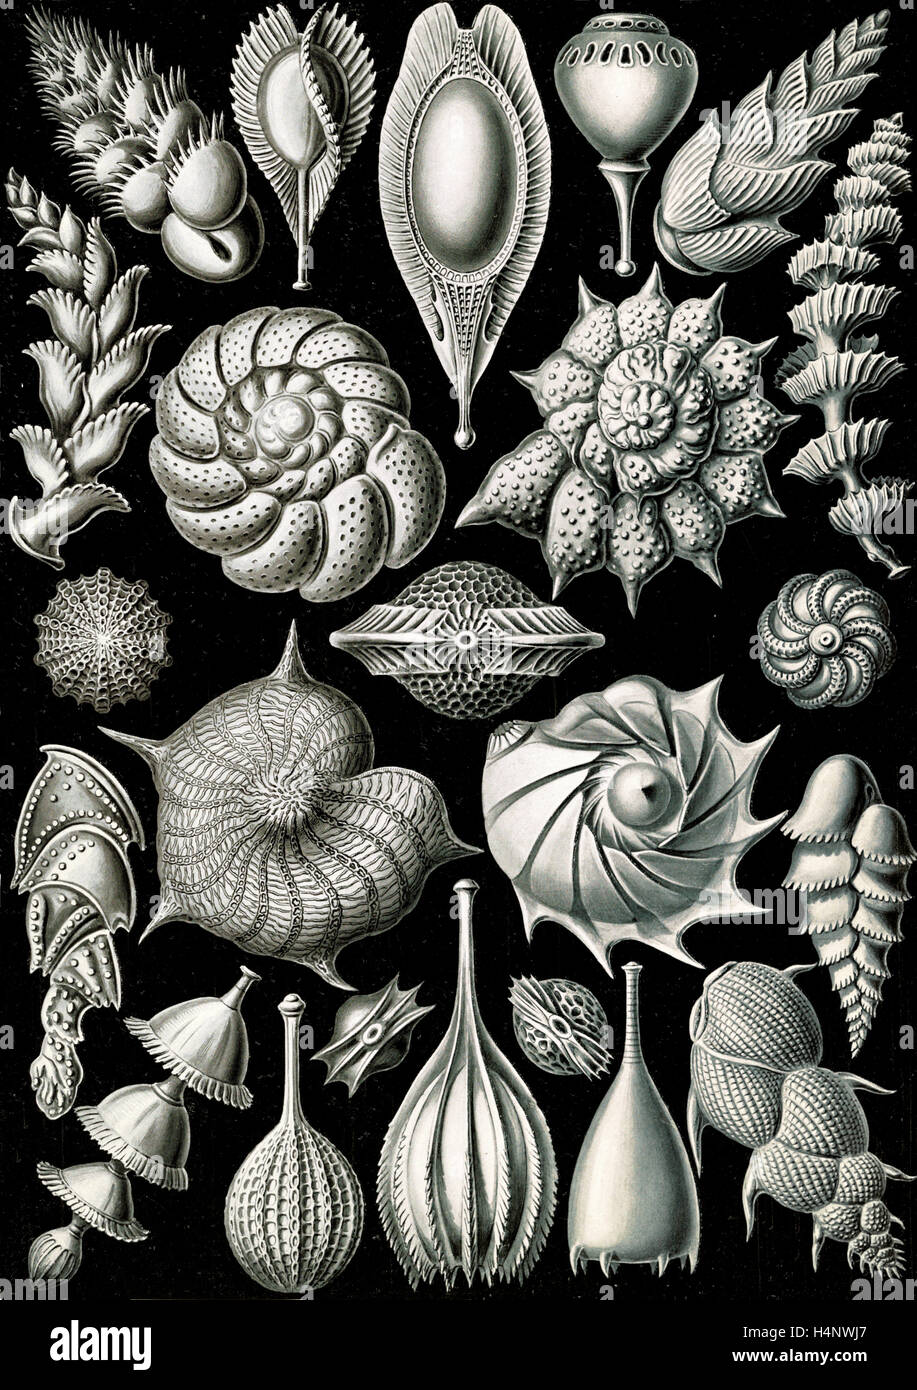 La ilustración muestra los microorganismos. Thalamophora. - Kammerlinge, 1 : impresión fotomecánica ; hoja 36 x 26 cm., 1904. Foto de stock